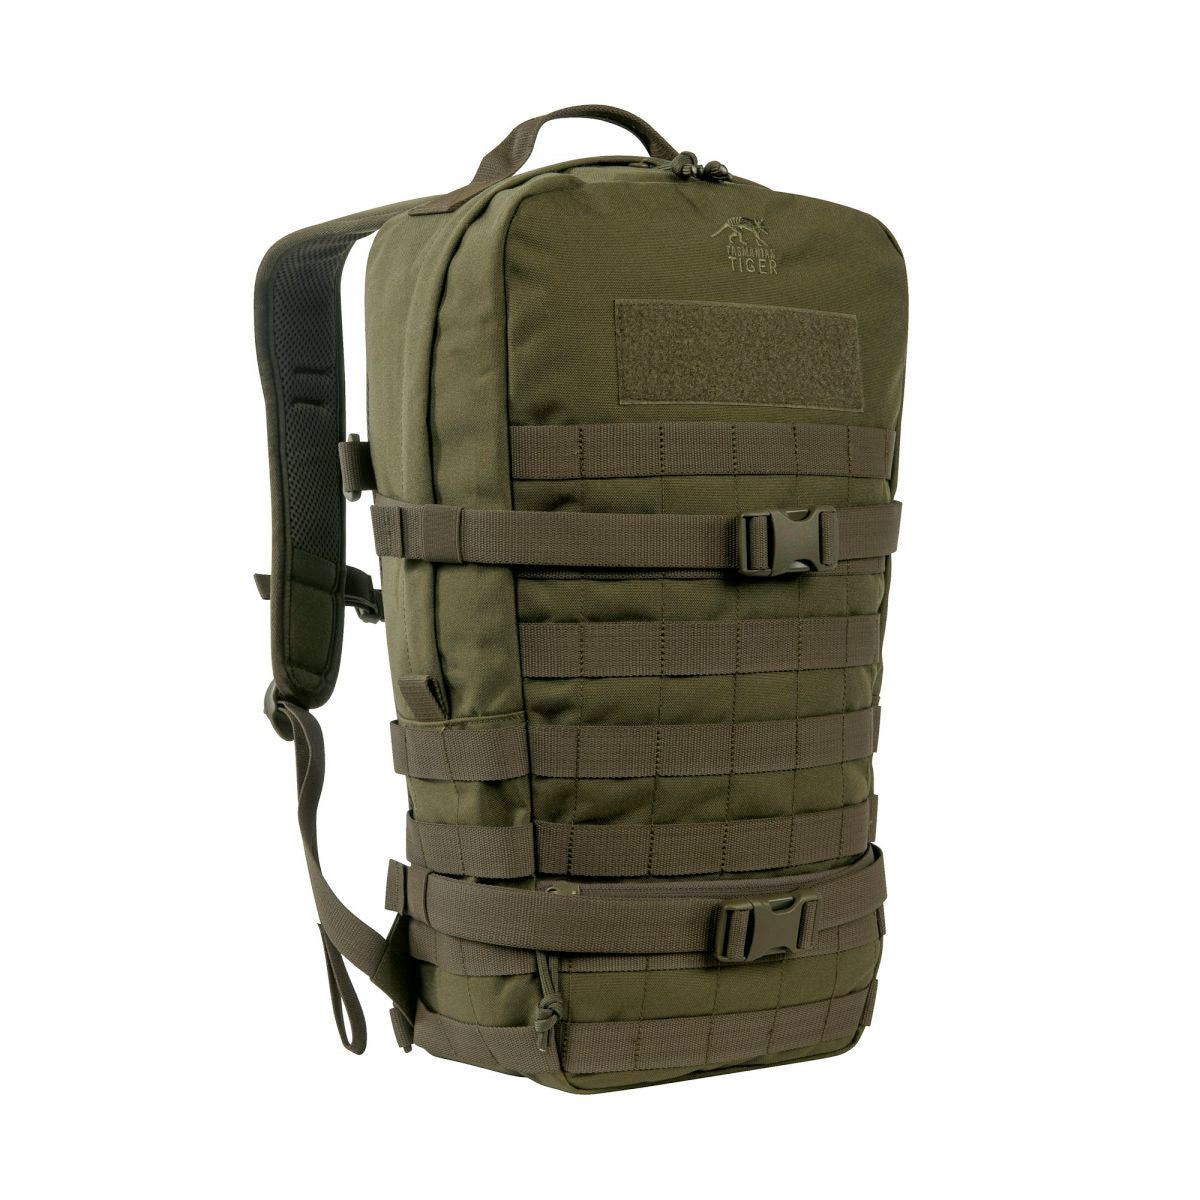 Tasmanian Tiger Essential Pack Large MKII Backpack 15 Liter Olive Tactical Distributors Ltd New Zealand